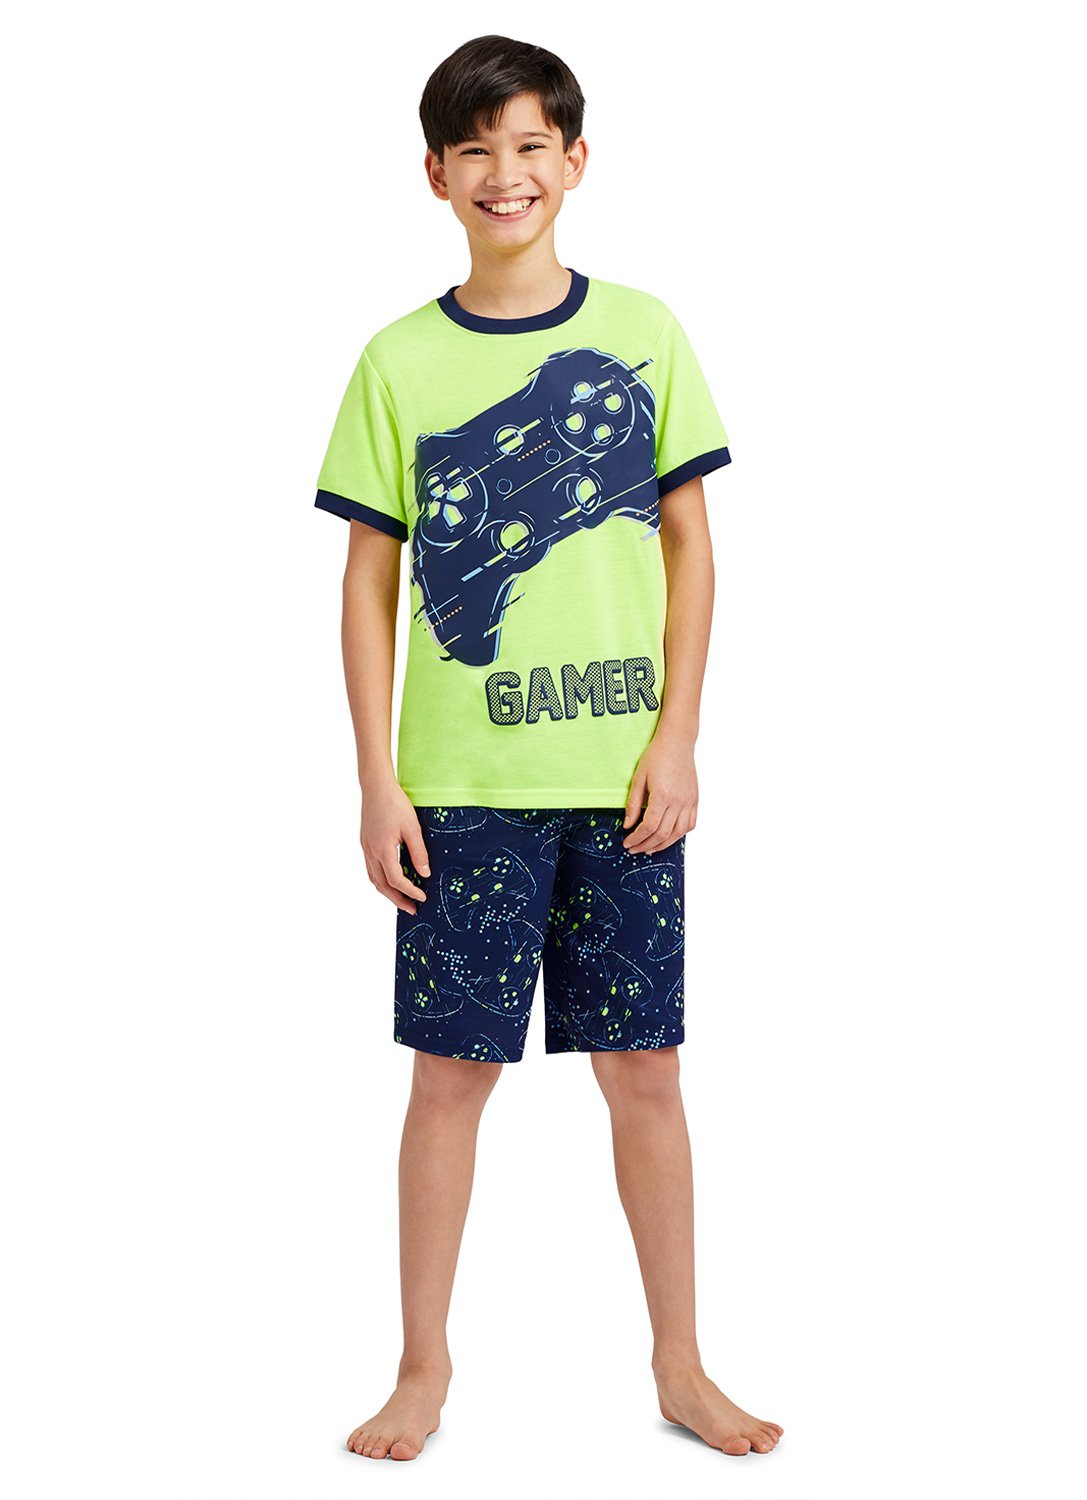 Boy wearing Gamer Print Top & Shorts